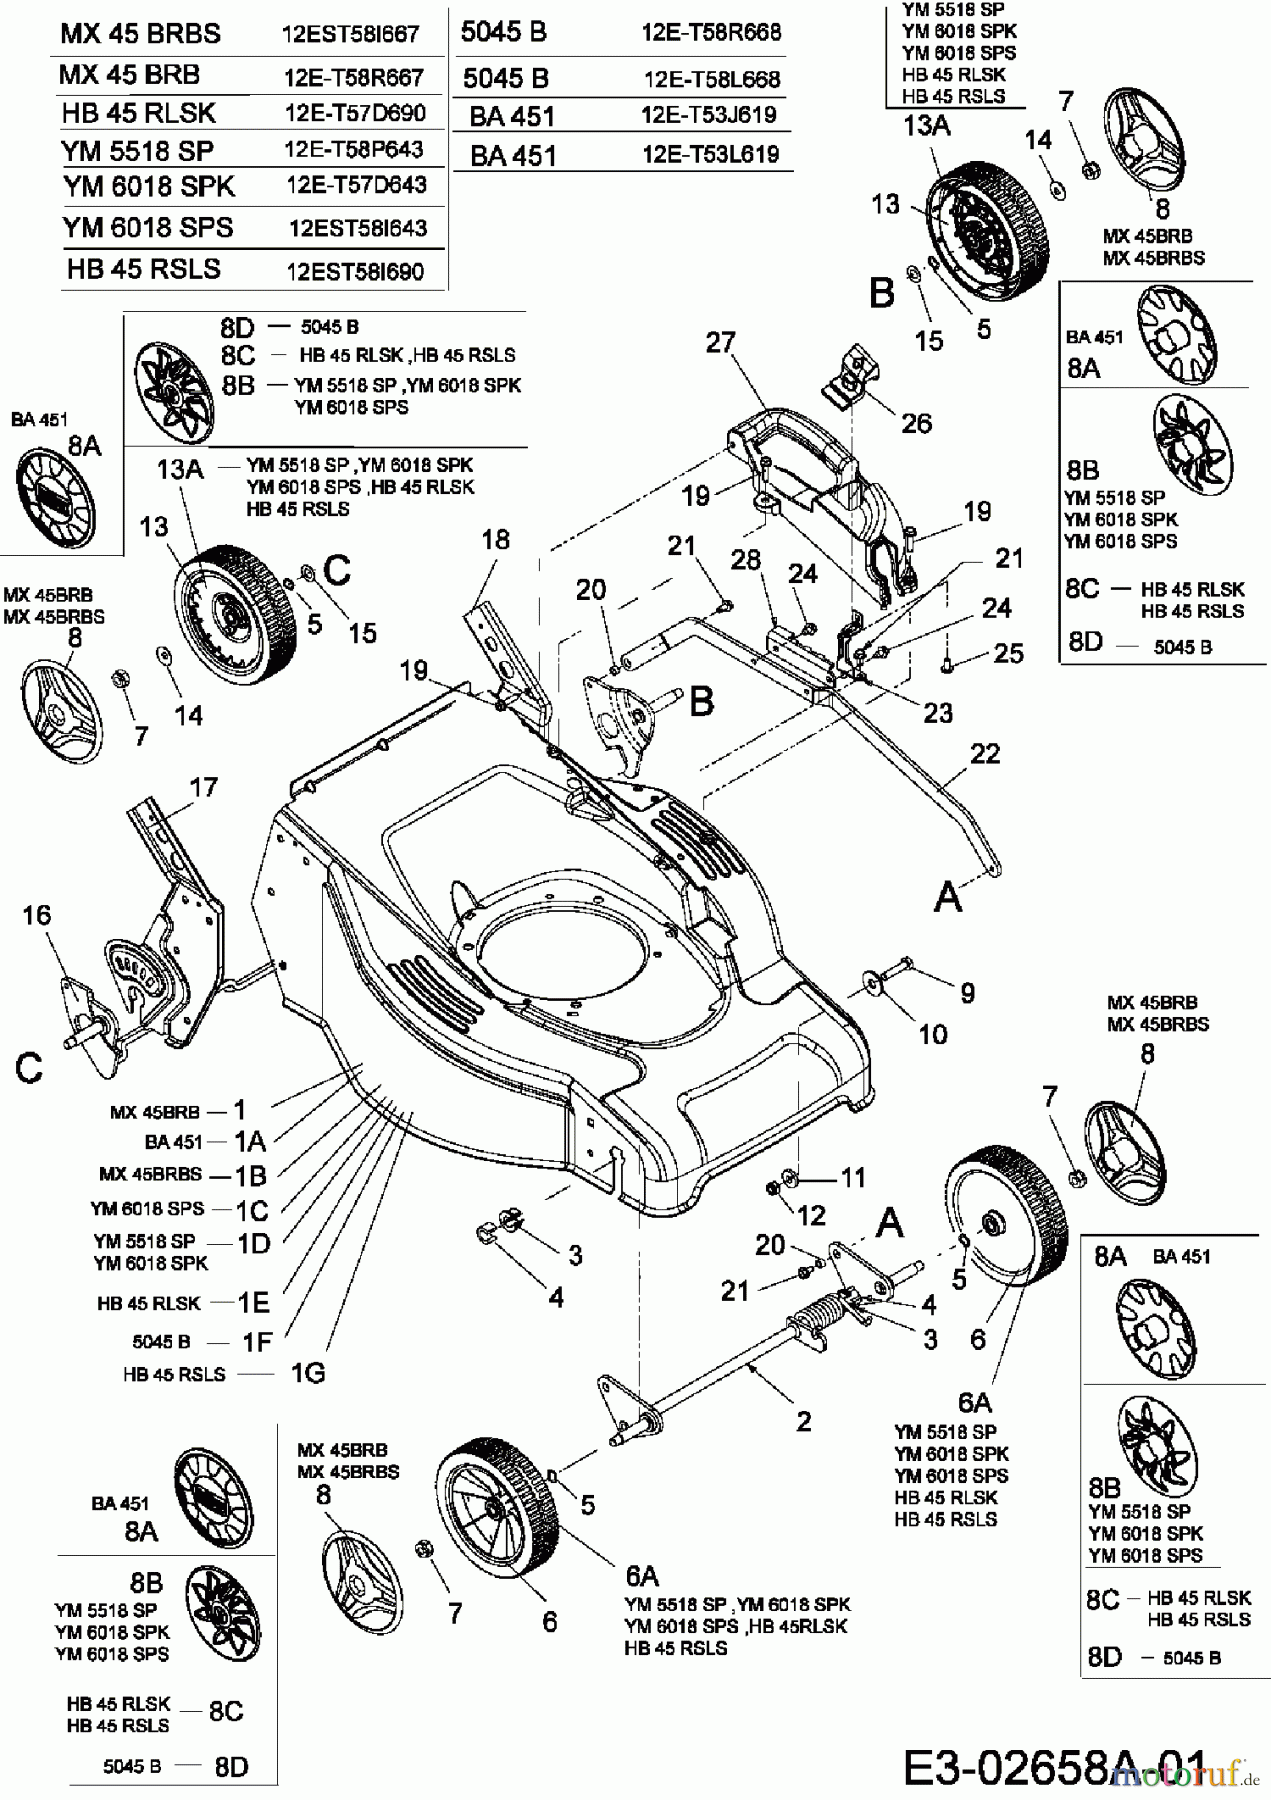  Merox Motormäher mit Antrieb MX 45 BRB 12E-T58R667  (2006) Höhenverstellung, Räder